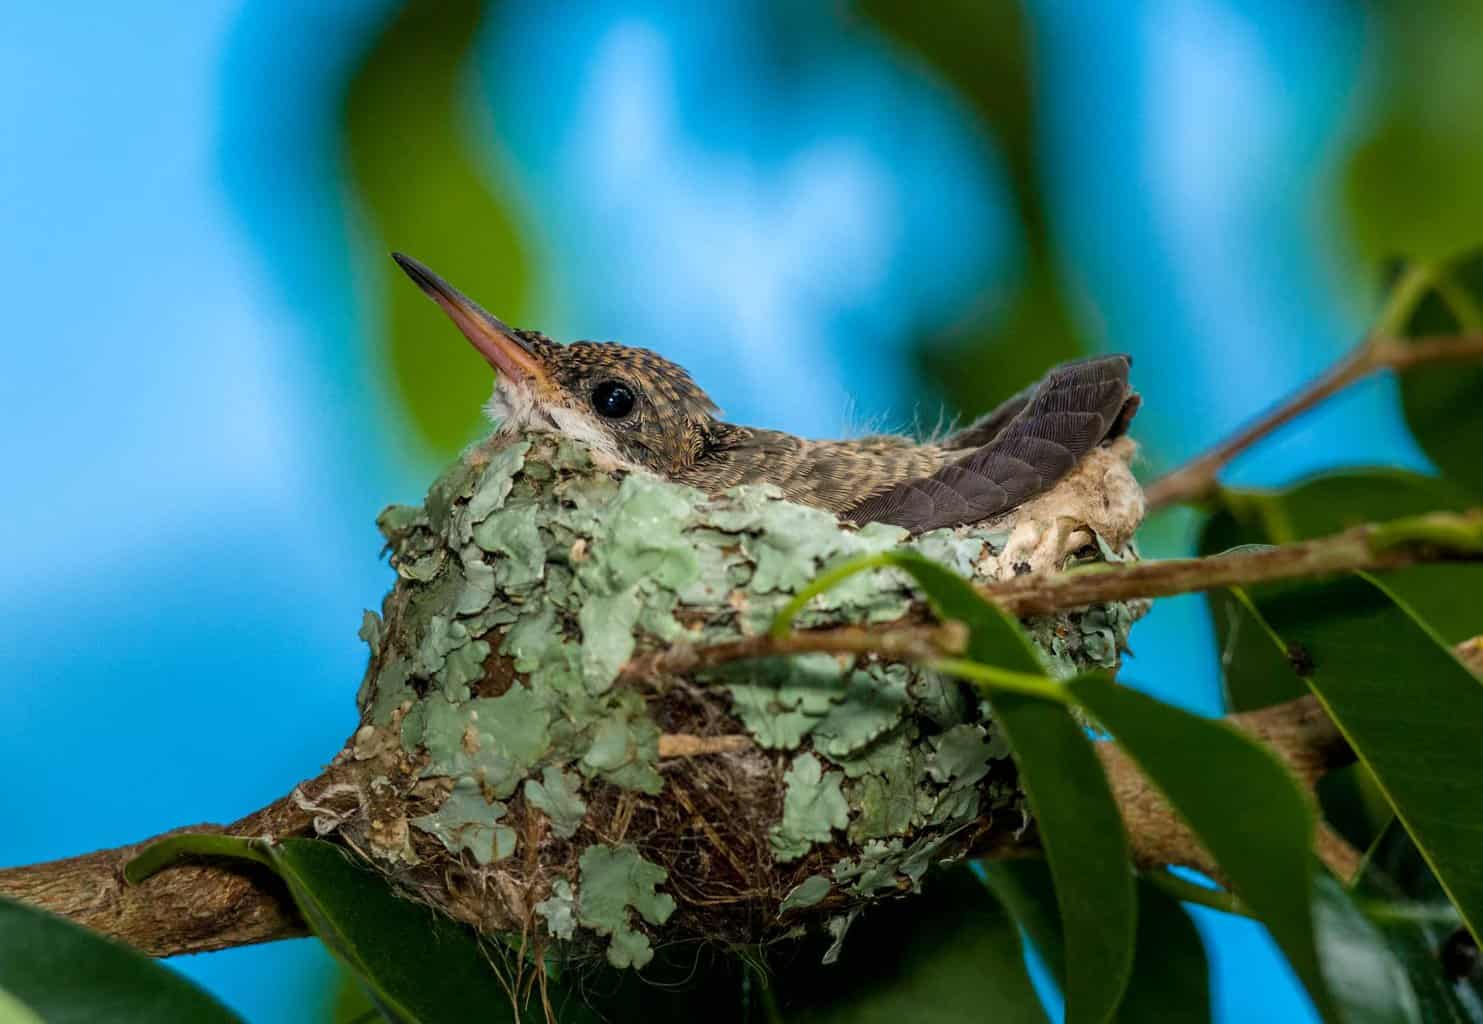 Where Do Hummingbirds Nest